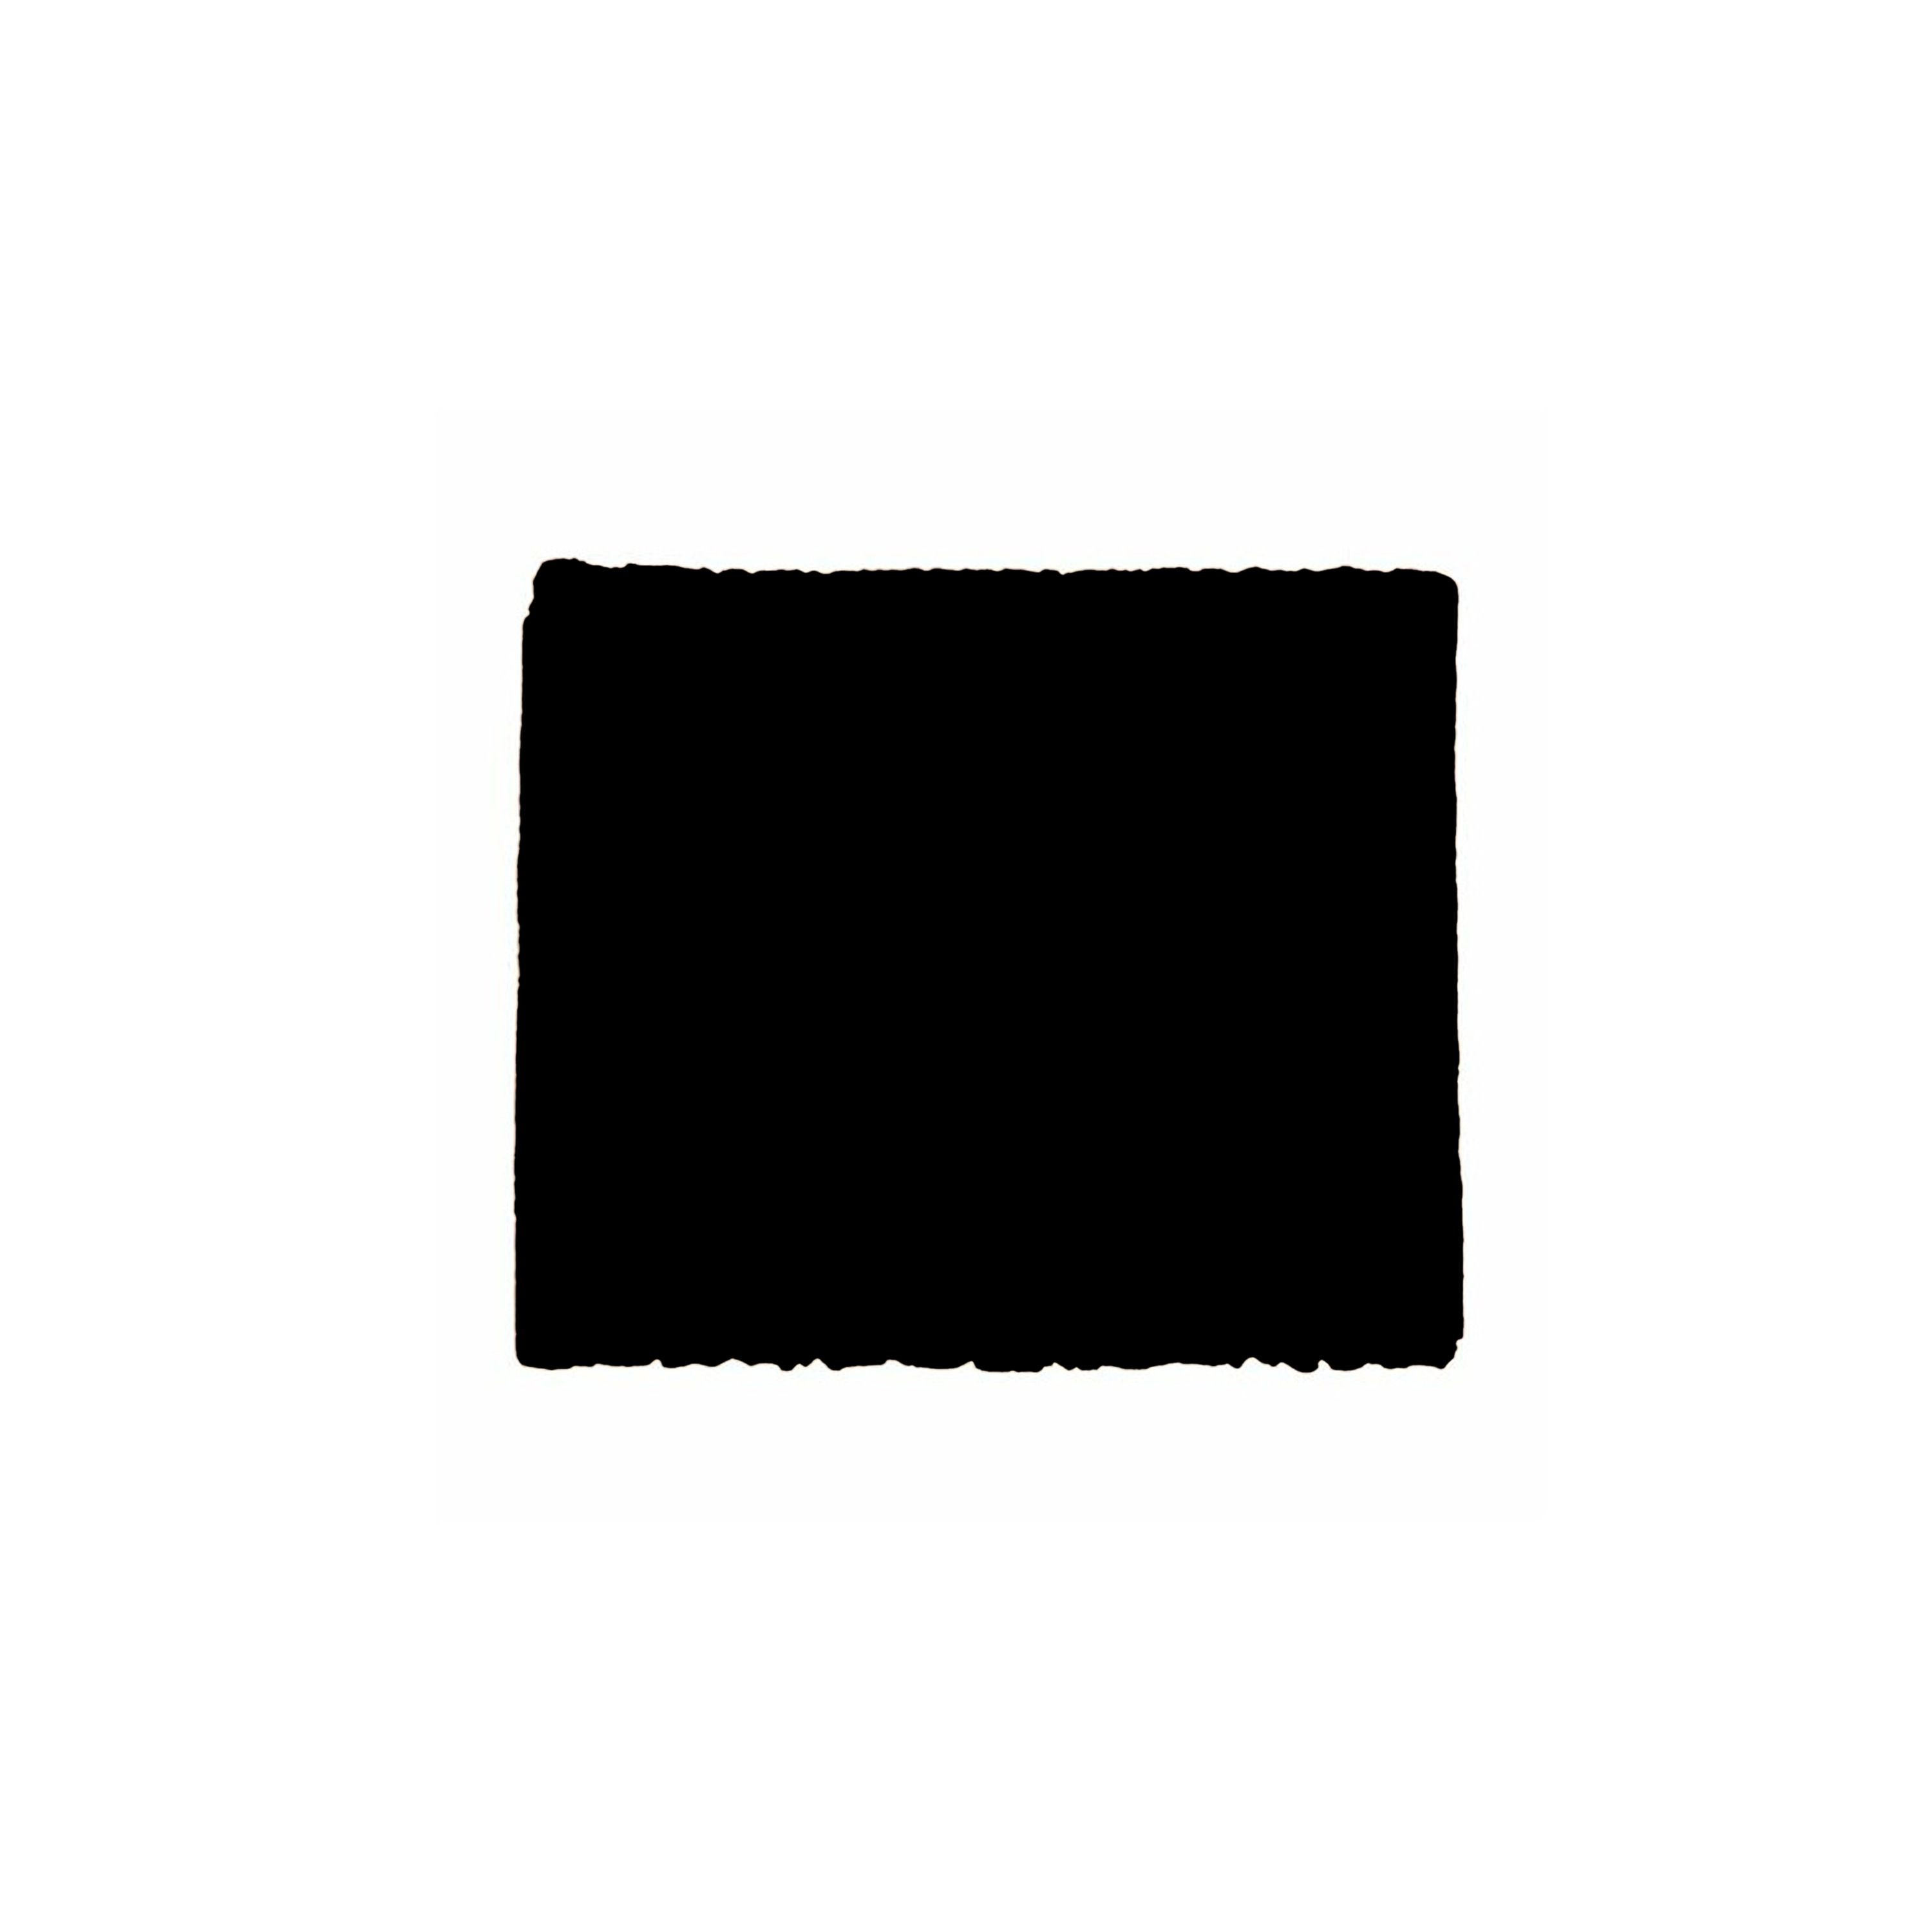 Anti-krasvilt 1x knipvel zwart 100 x 100 mm rechthoek zelfklevend meubel beschermvilt